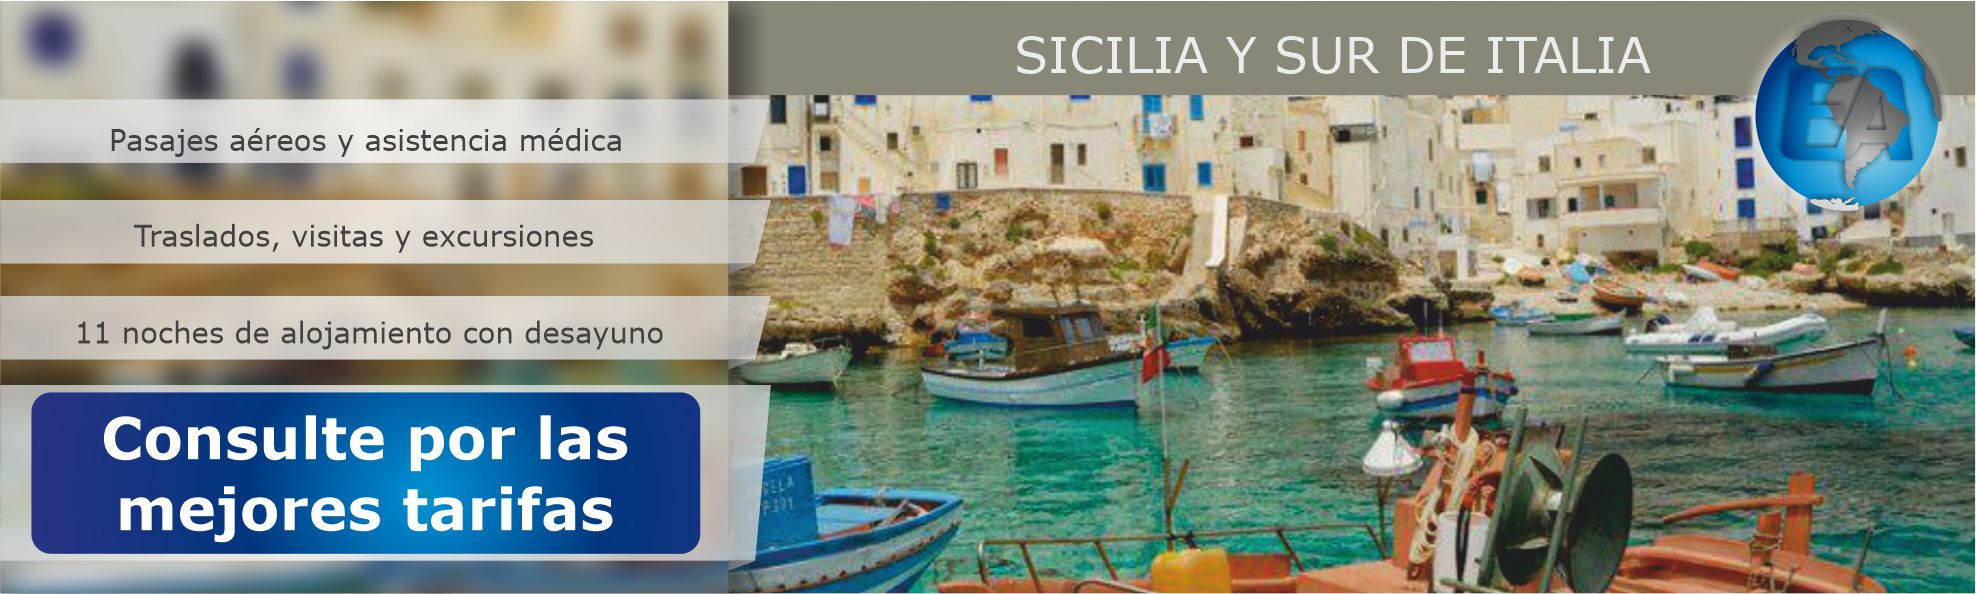 Sicilia y sur de Italia